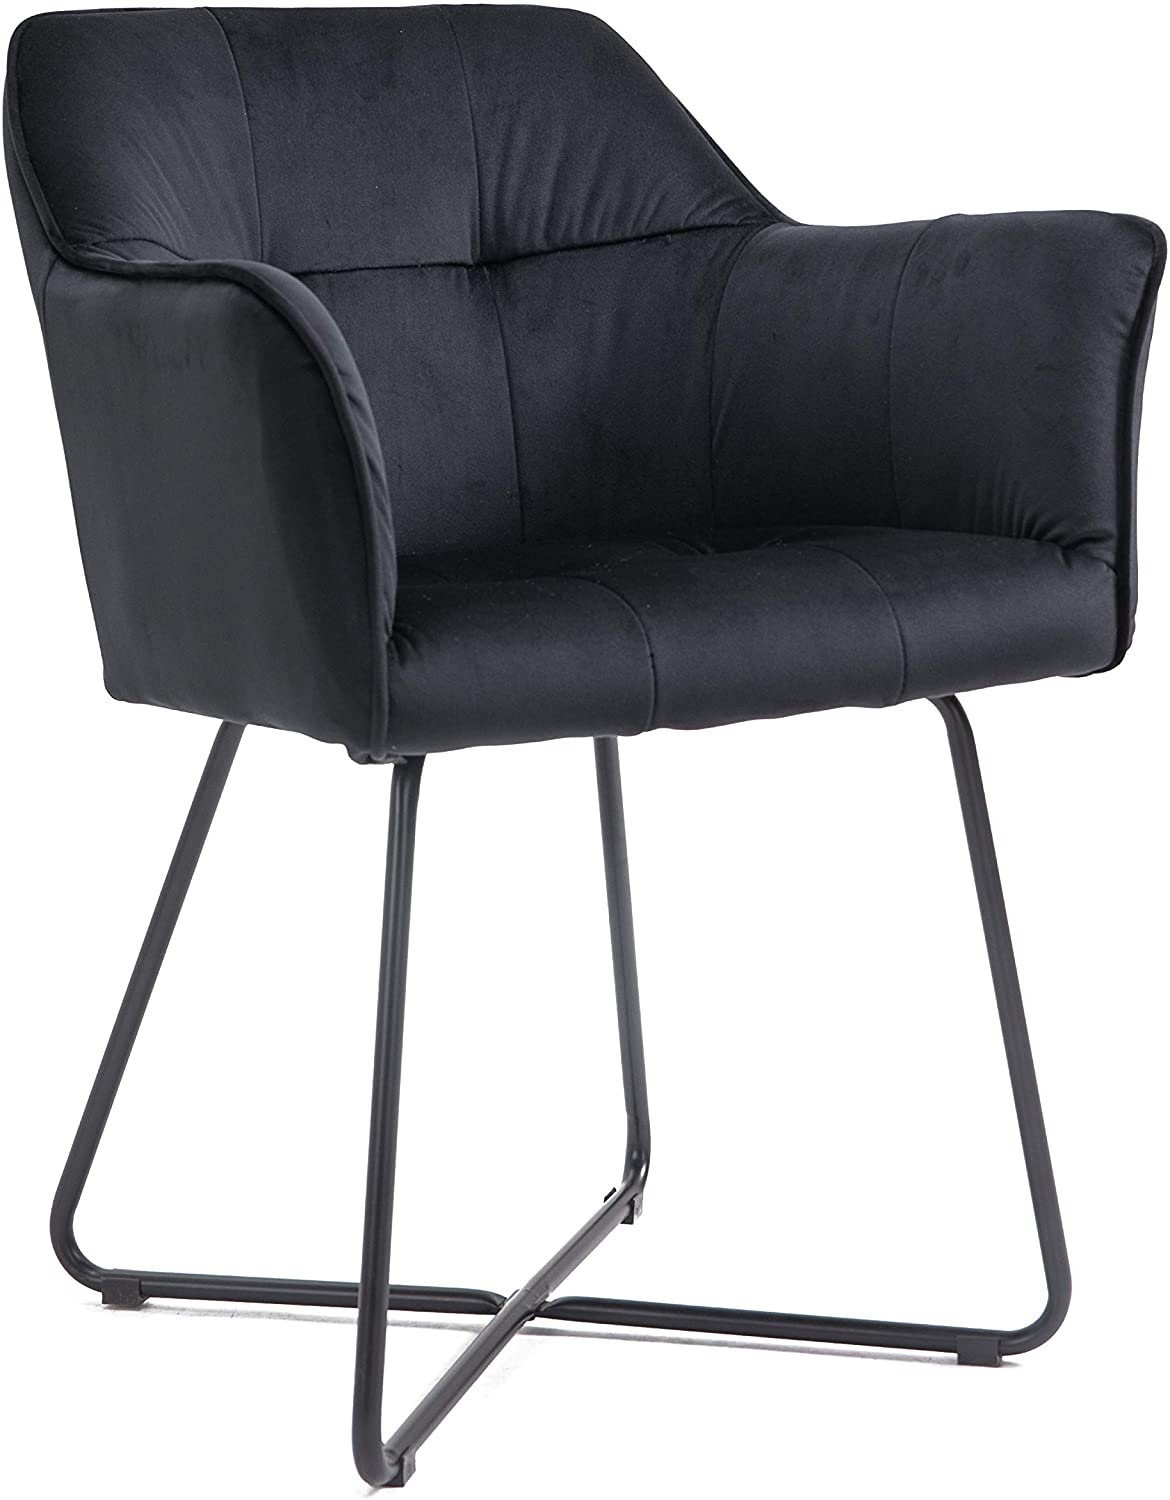 SAM® Armlehnstuhl Kirin, Esszimmerstuhl mit Samtbezug und Absteppungen, schwarze Metallfüße